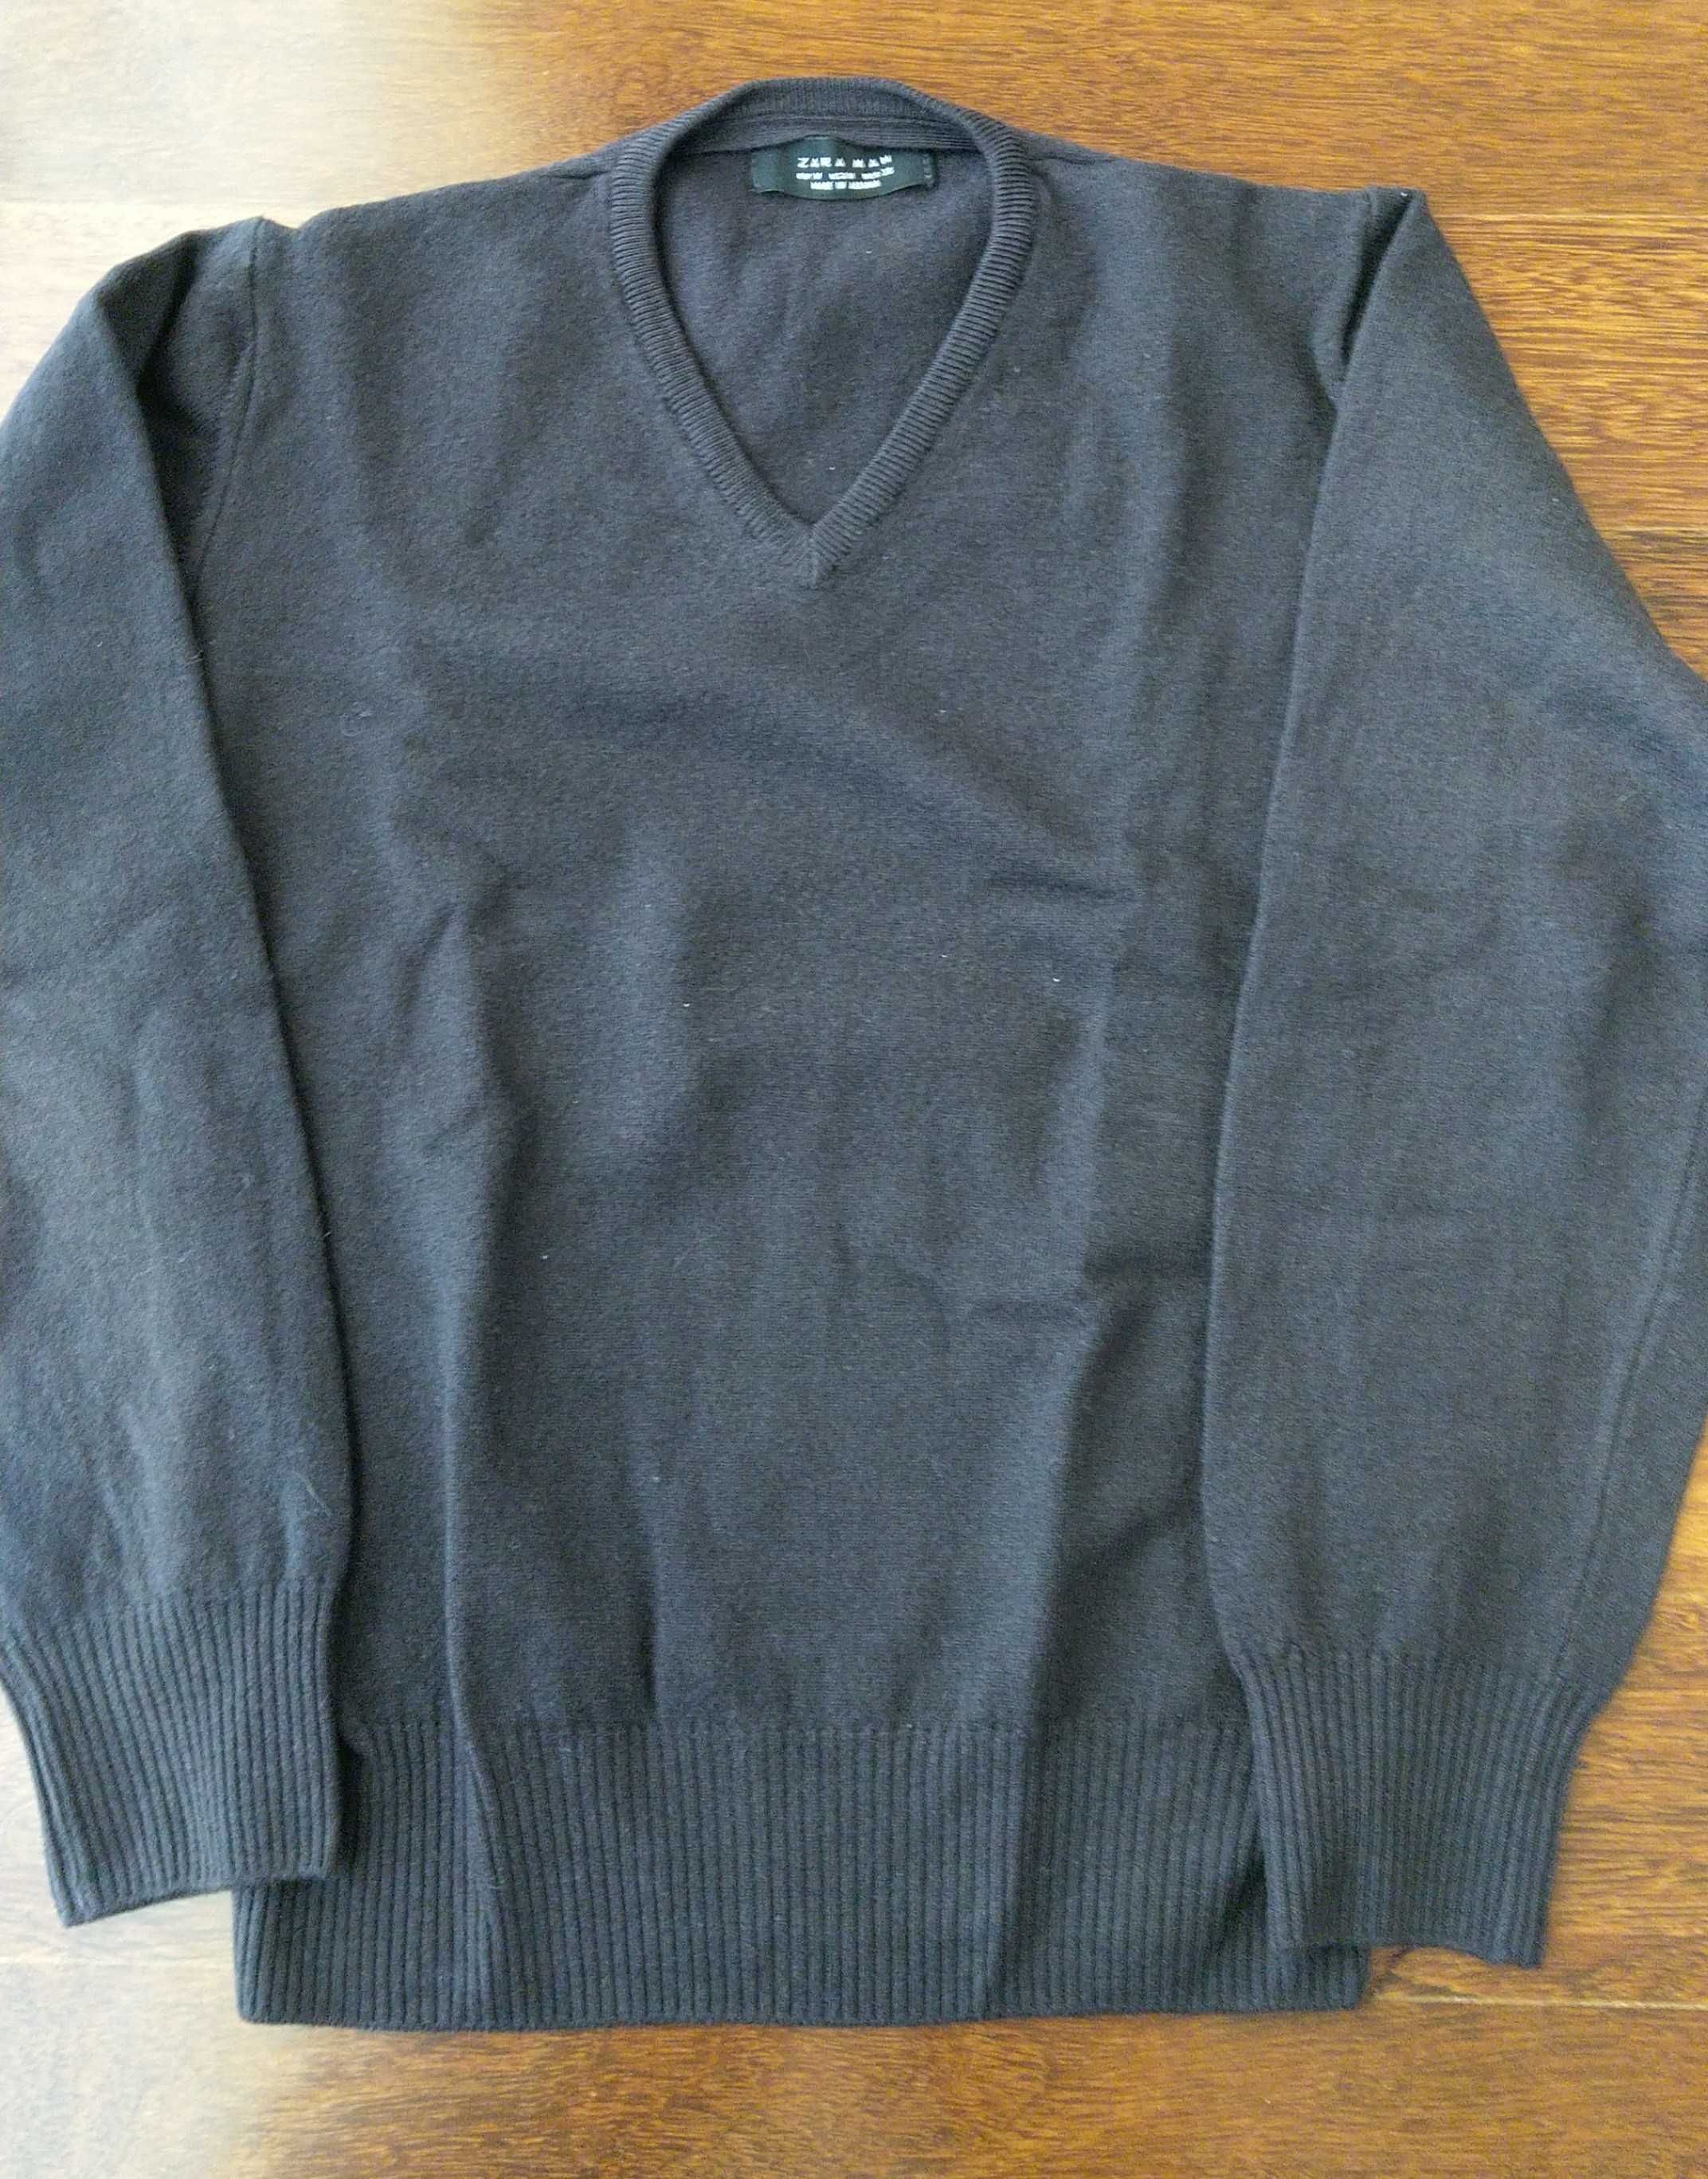 Camisola pulover 8/10 anos malha Zara